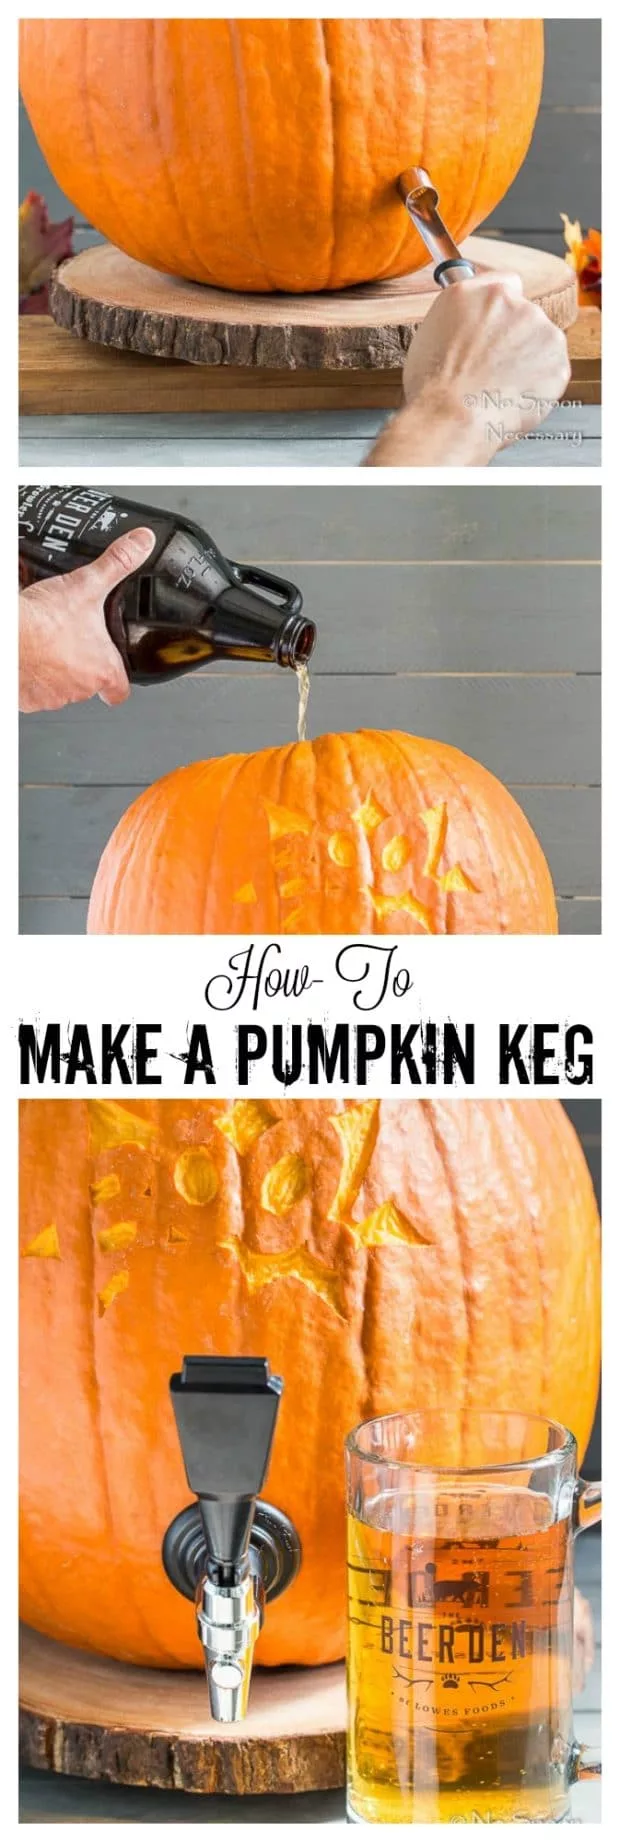 How To Make A Pumpkin Keg